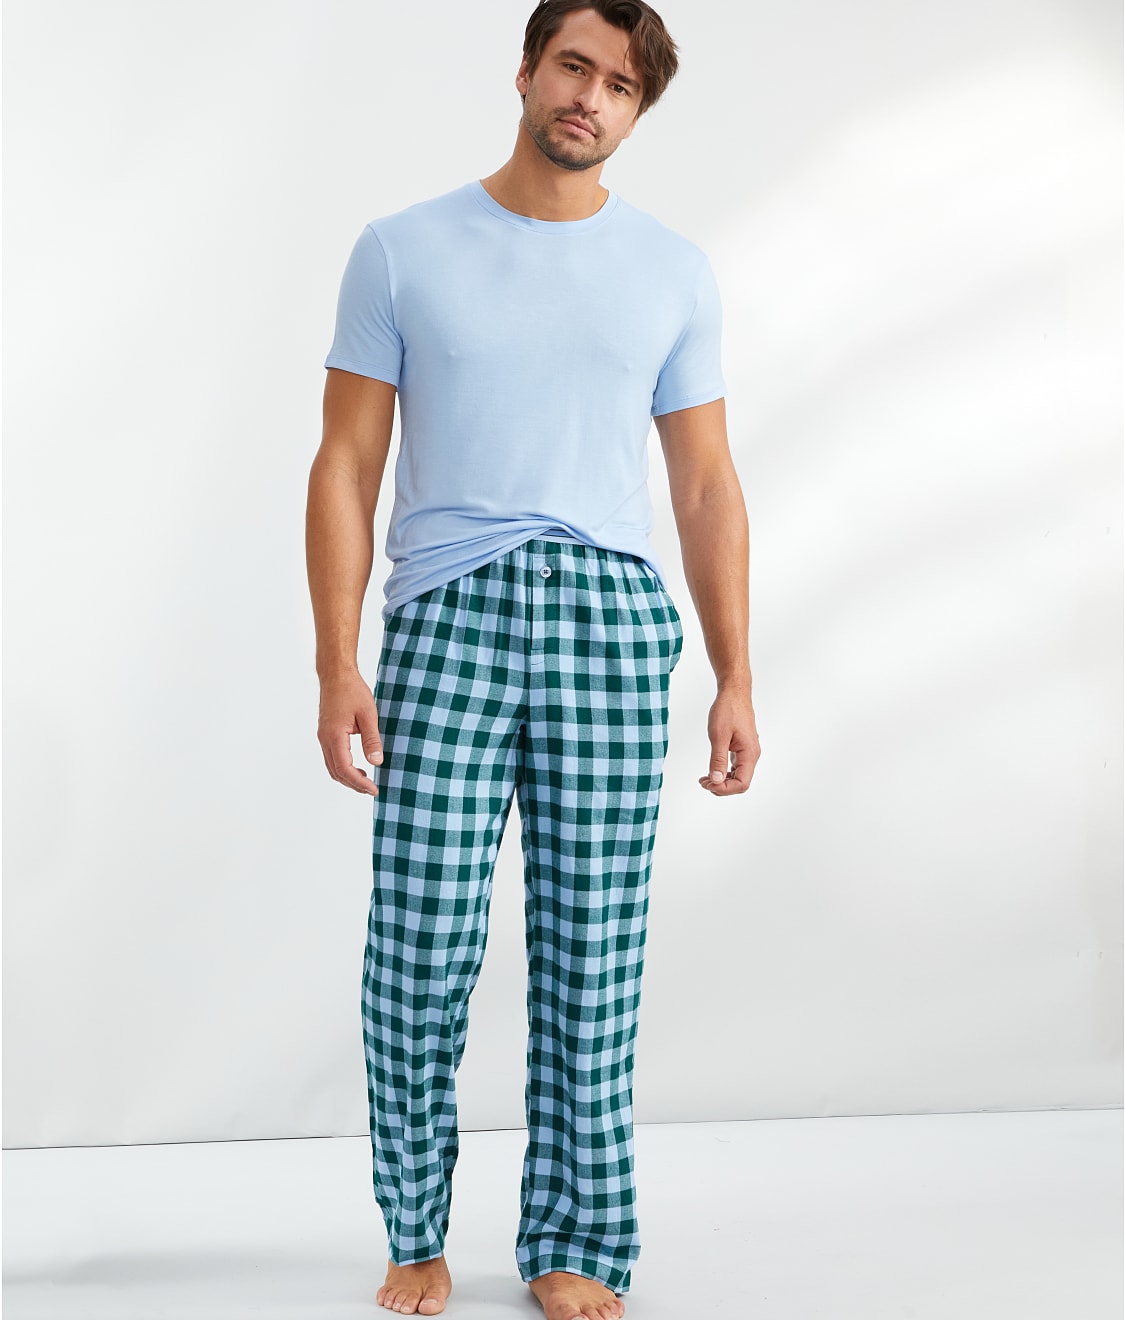 Bare: The Men's Cozy Flannel PJ Pants BN-2084